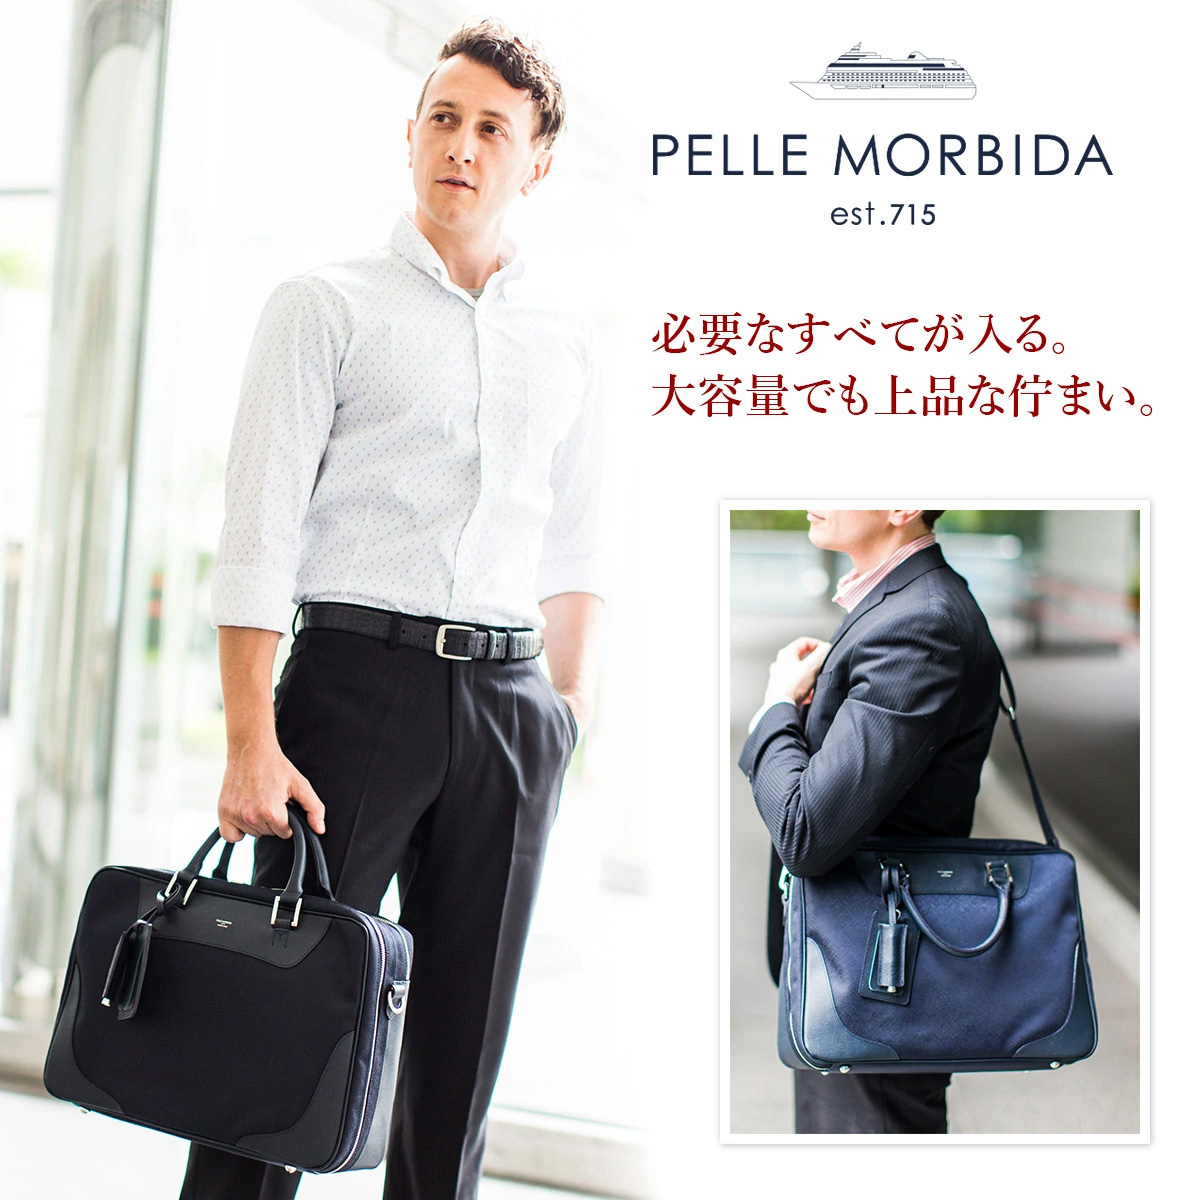 半価直販 PELLE MORBIDA ブリーフケース | artfive.co.jp